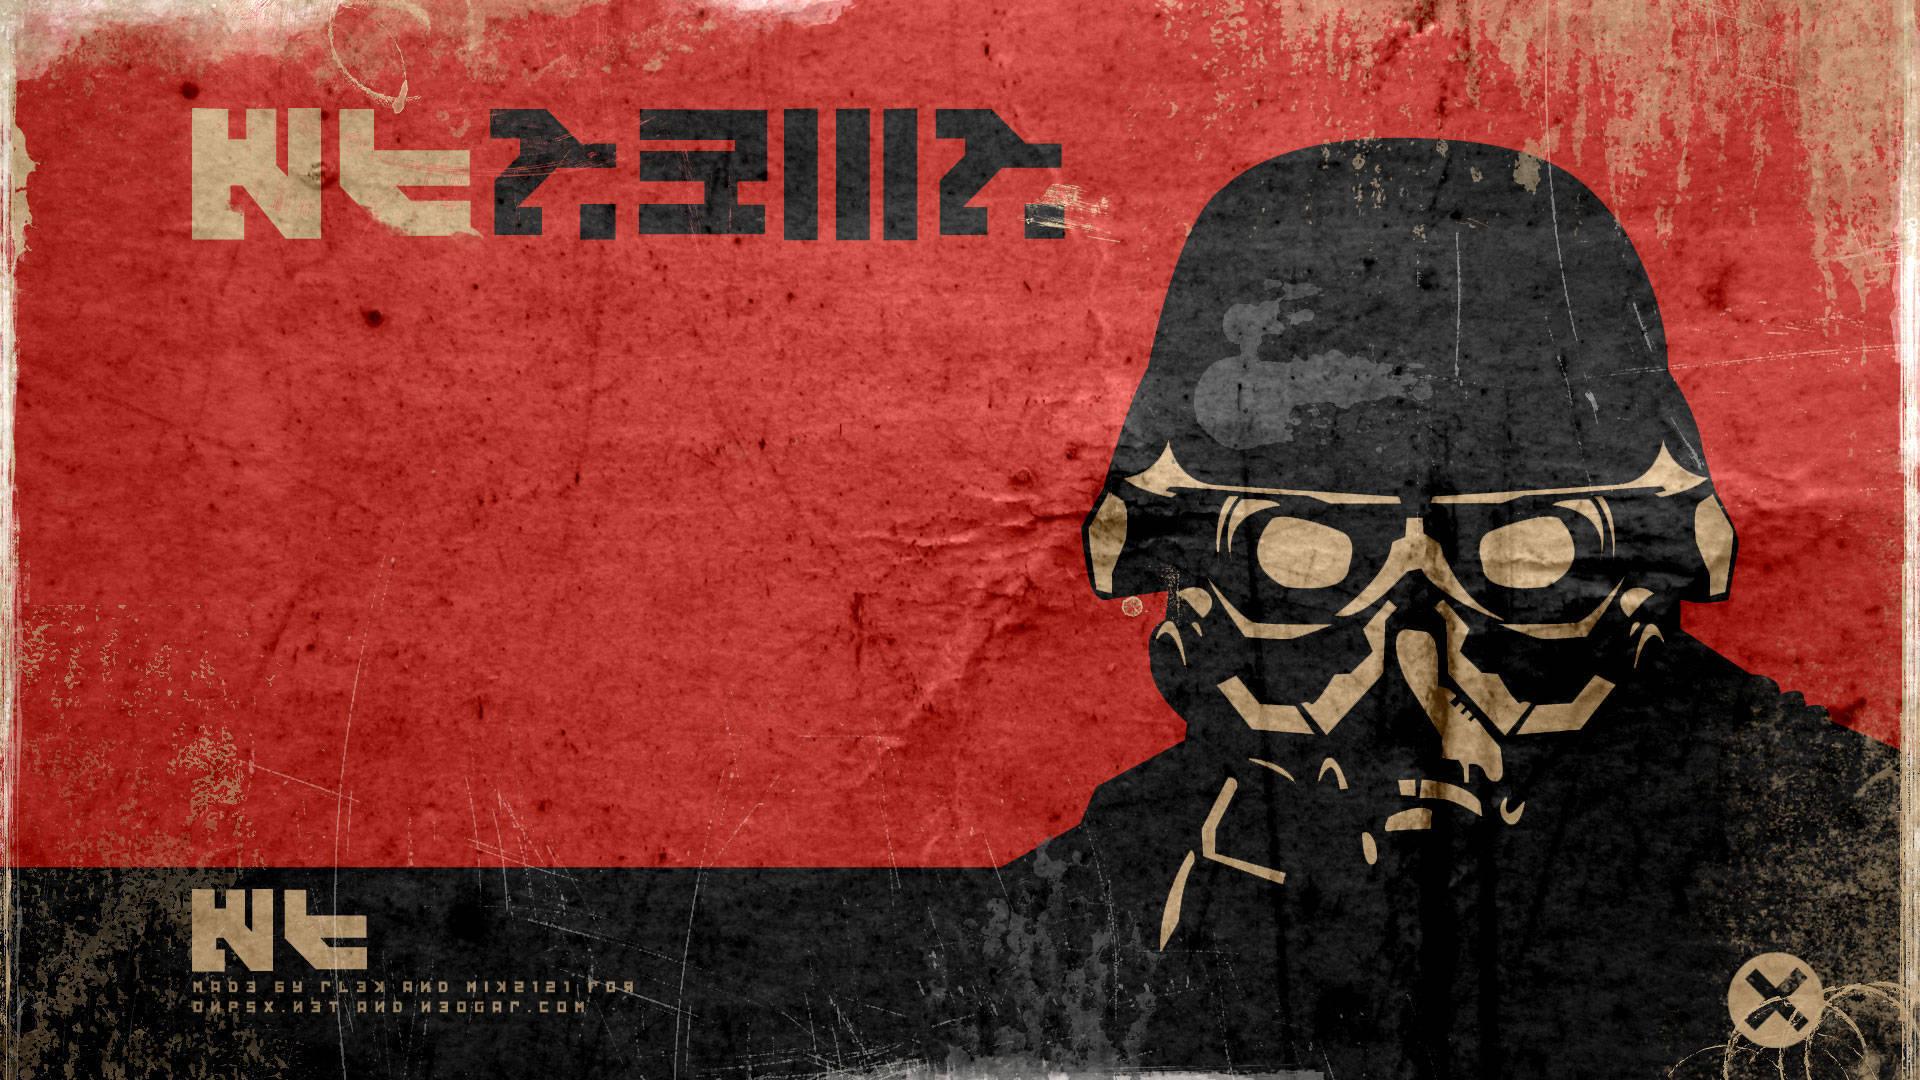 Killzone 2 PS3 Wallpaper.com Forums